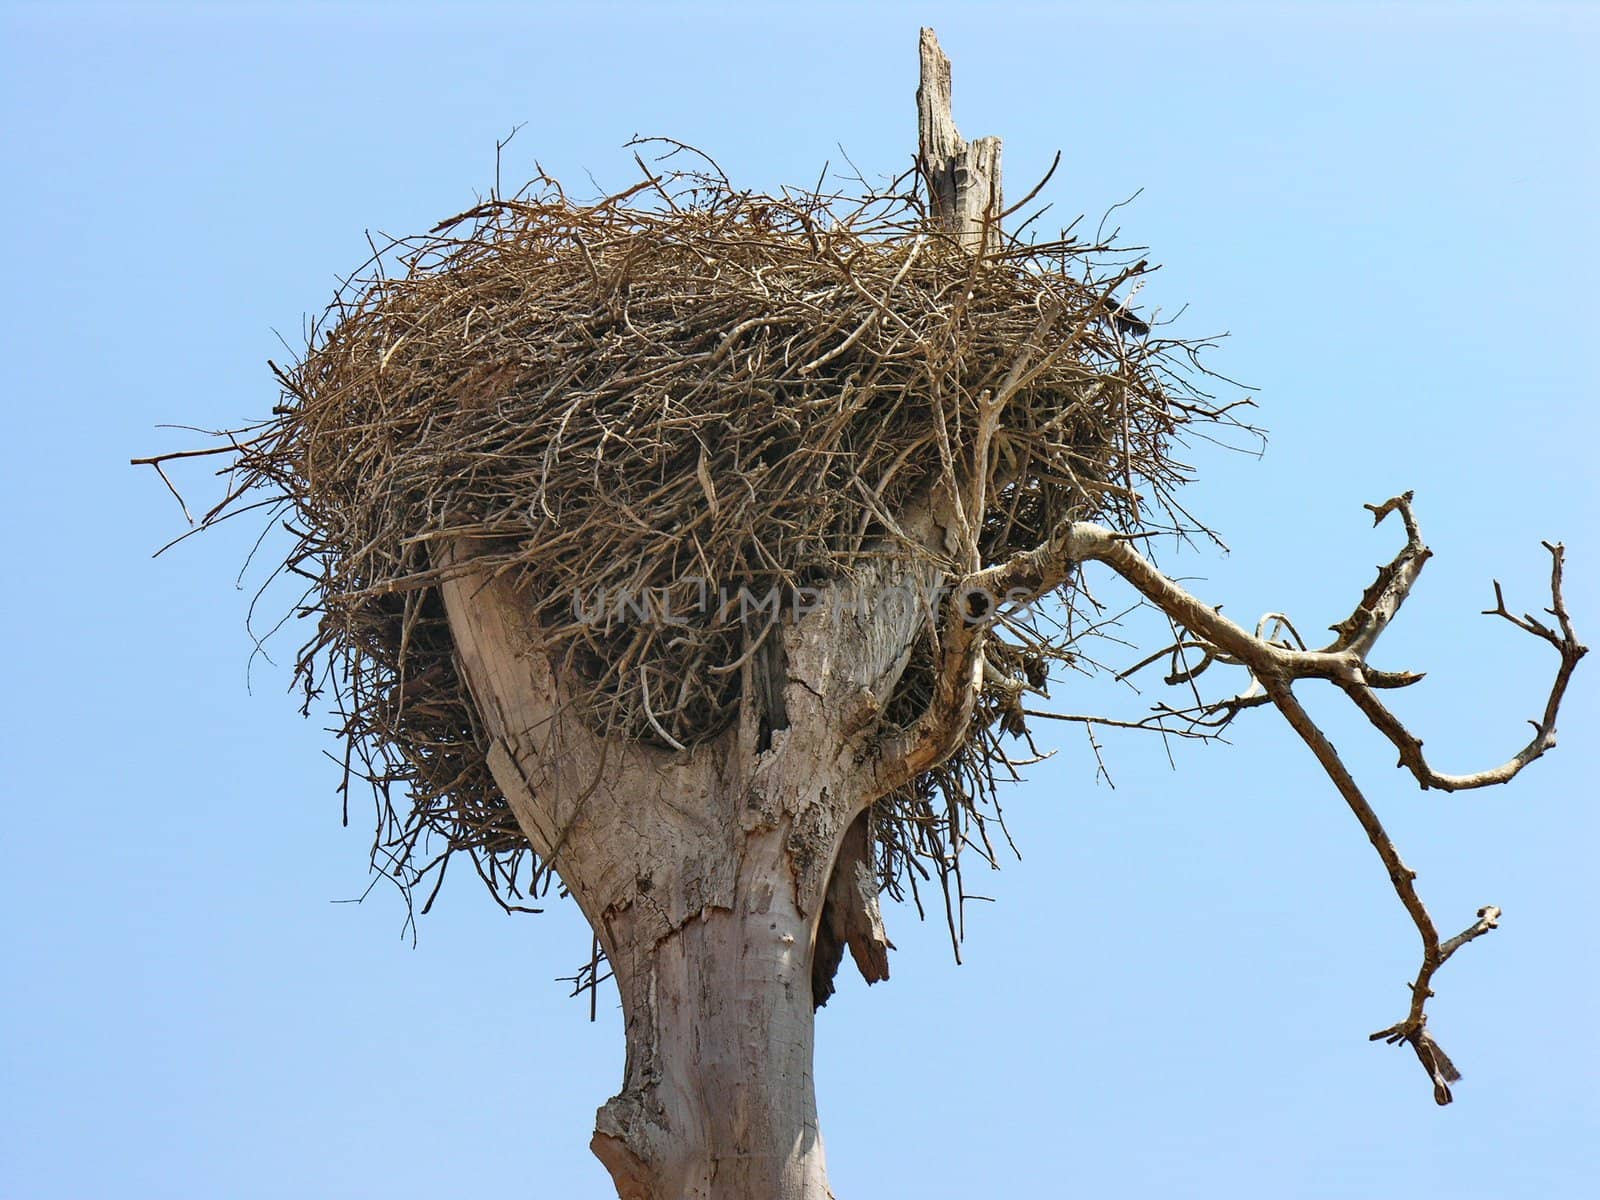 Stork nest by rigamondis